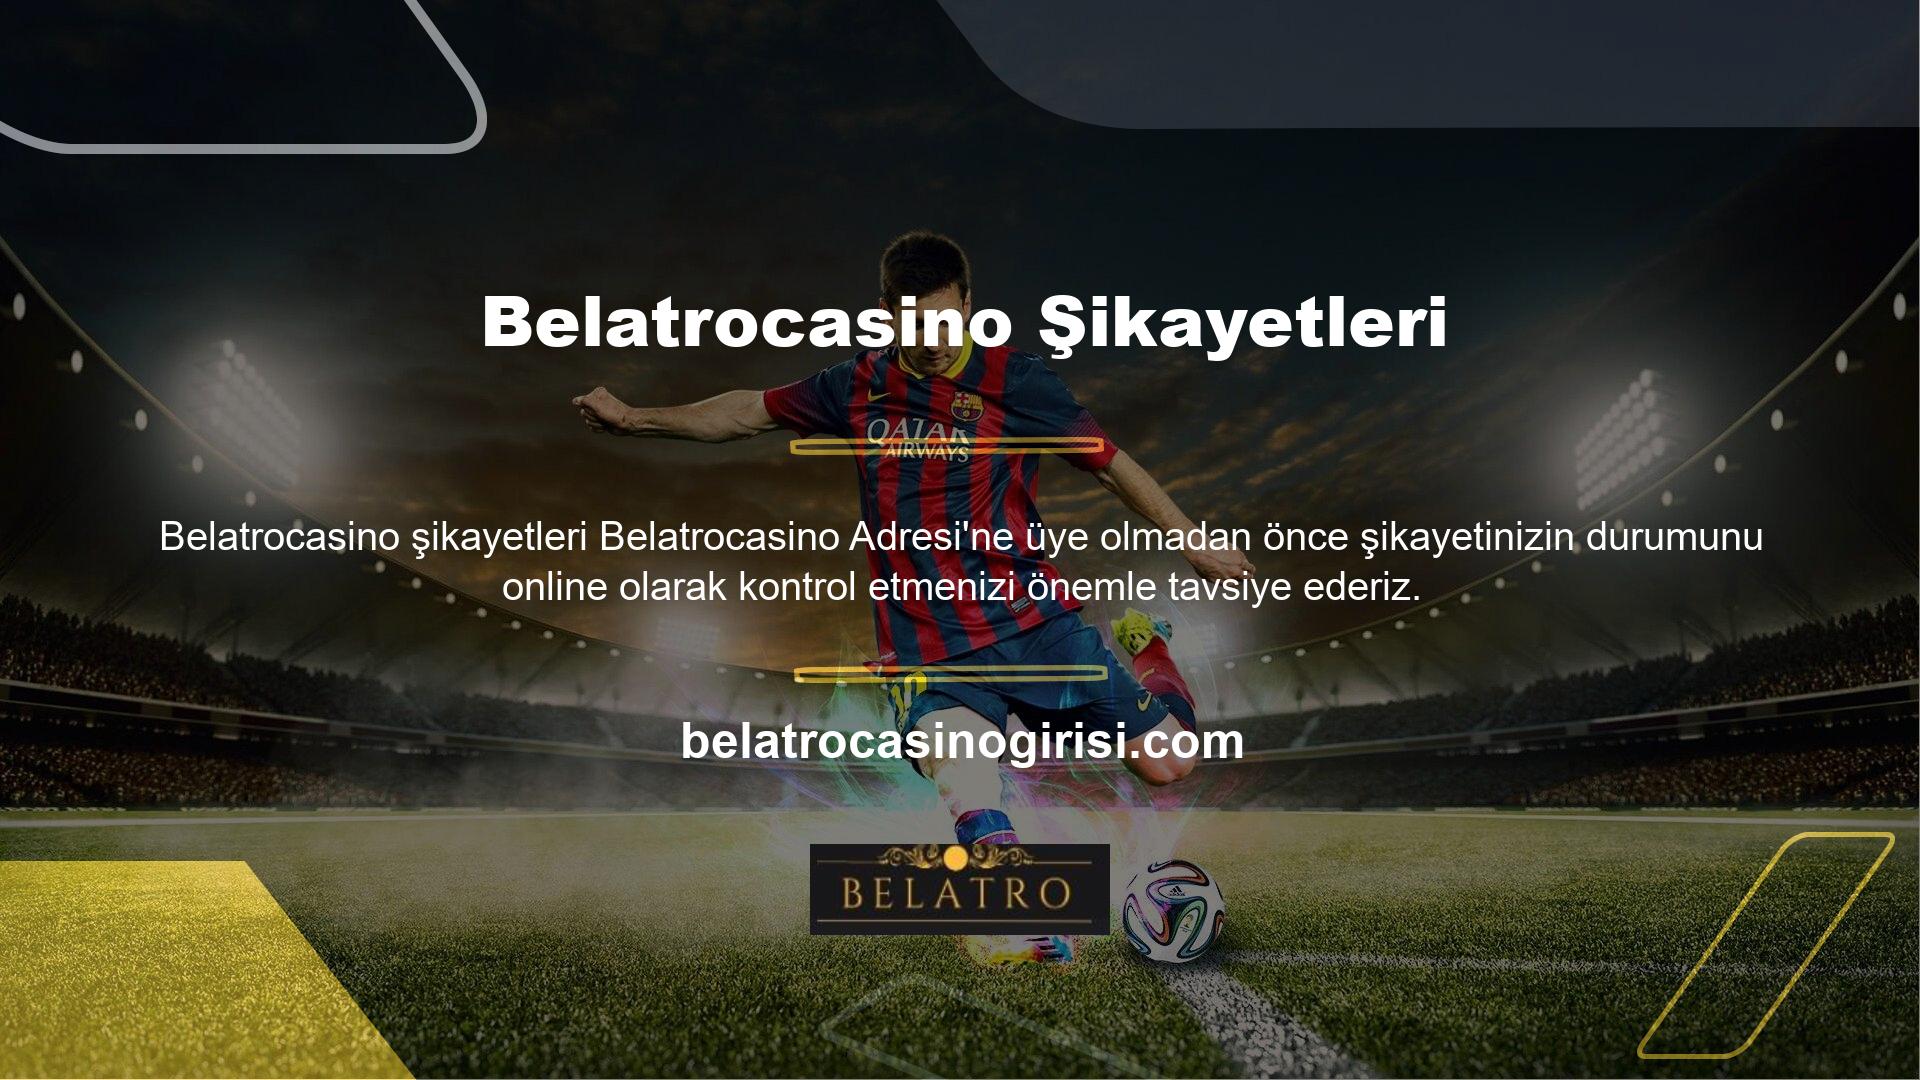 Belatrocasino Bahis, kullanıcılar tarafından önerilen sitelerden biridir